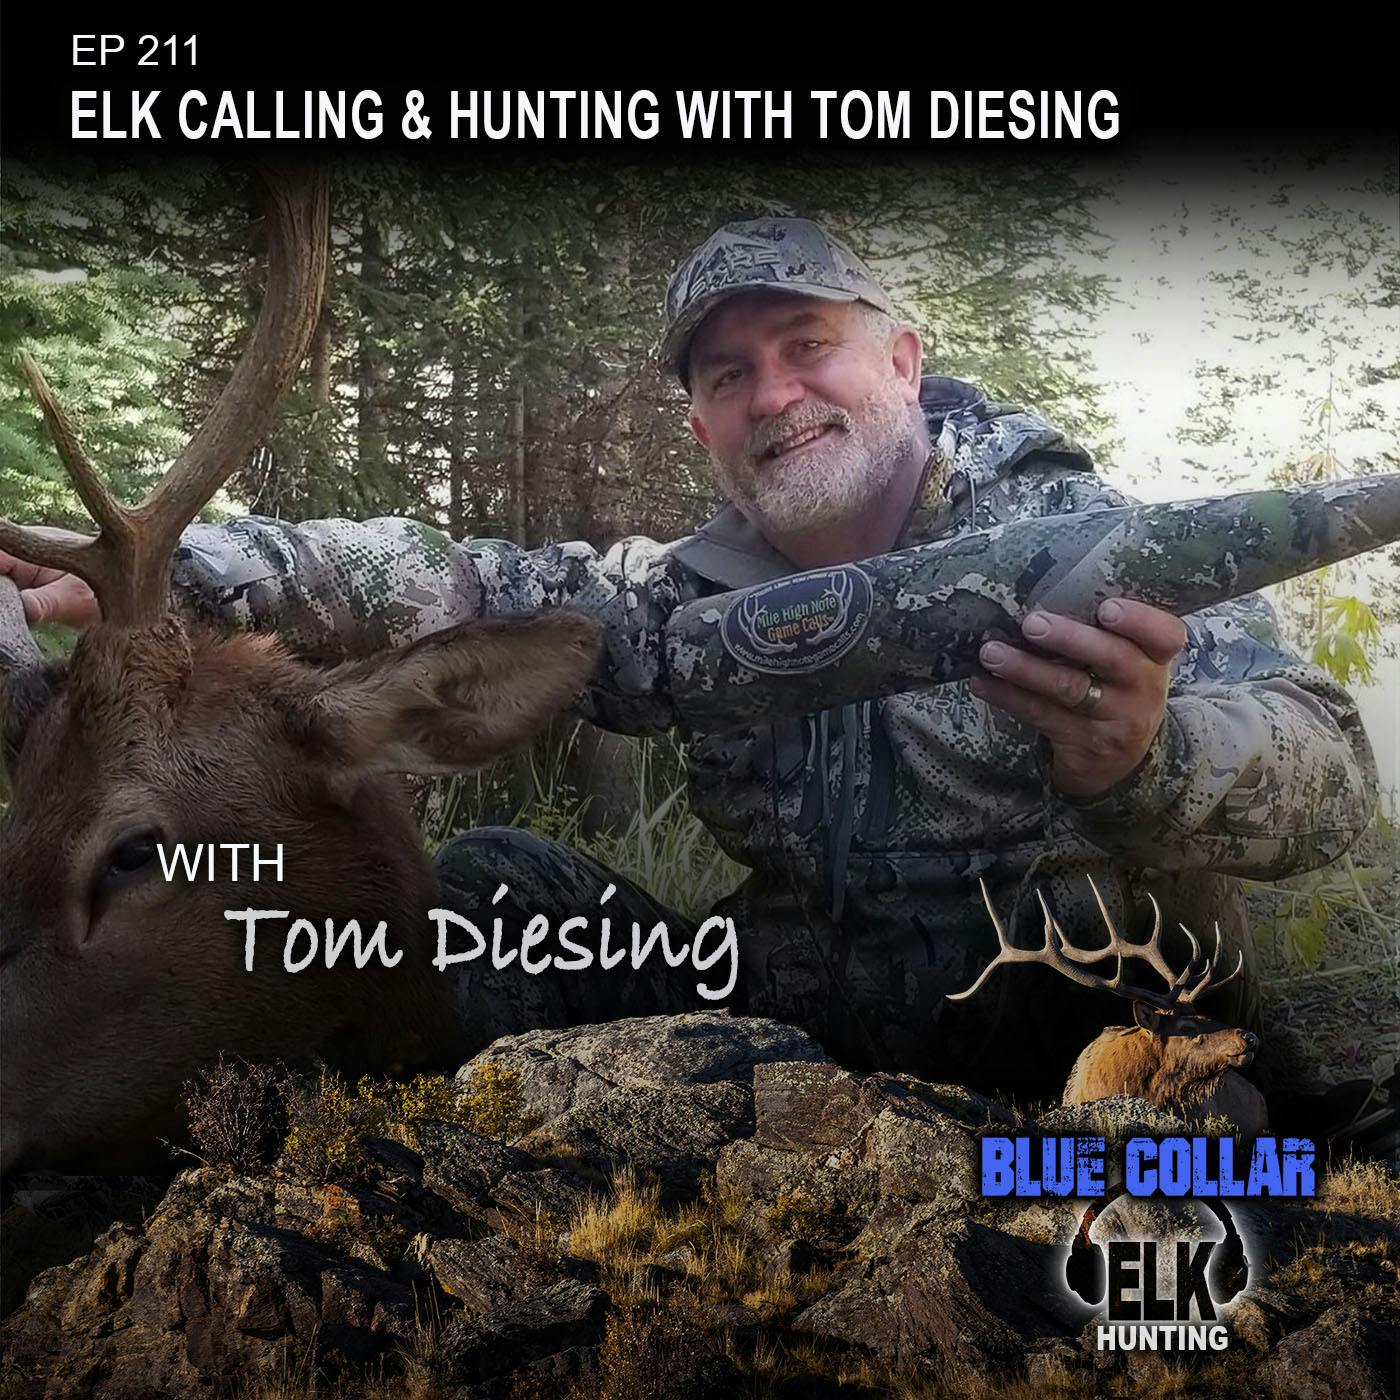 EP 211: Talking Elk Hunting & Calling with Tom Diesing